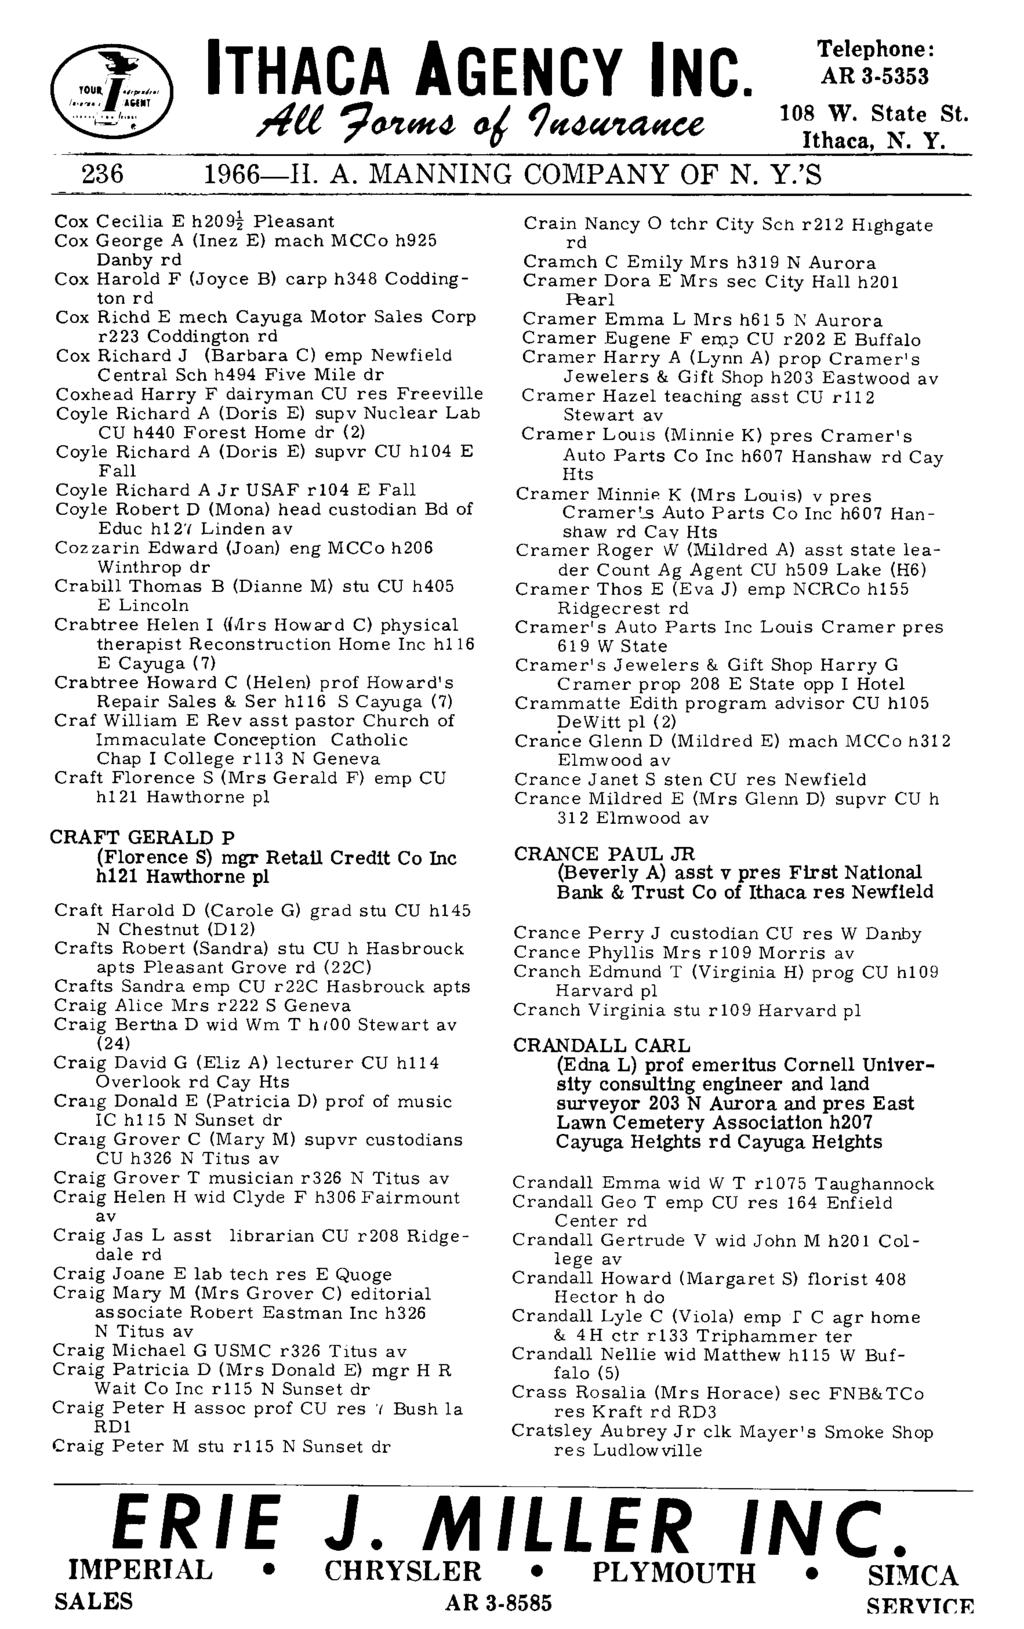 236 ITHACA AGENCY INC. AU 7fYtHt4- (J111t4-~ 1966-II. A. MANNING COMPANY OF N. Y.